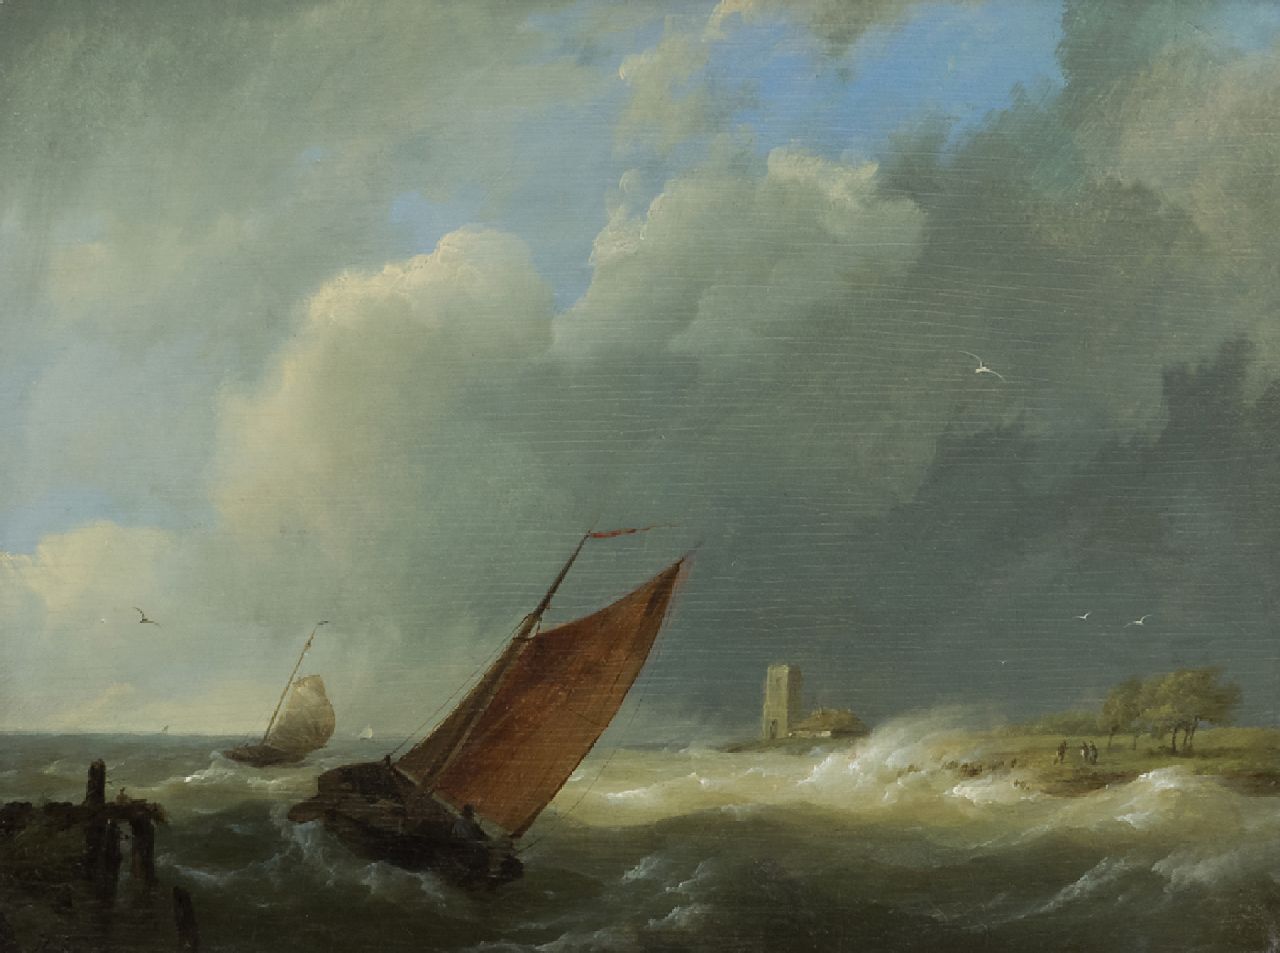 Koekkoek H.  | Hermanus Koekkoek | Schilderijen te koop aangeboden | Zeilschepen bij stormachtig weer, olieverf op paneel 18,7 x 24,8 cm, gesigneerd linksonder met initialen